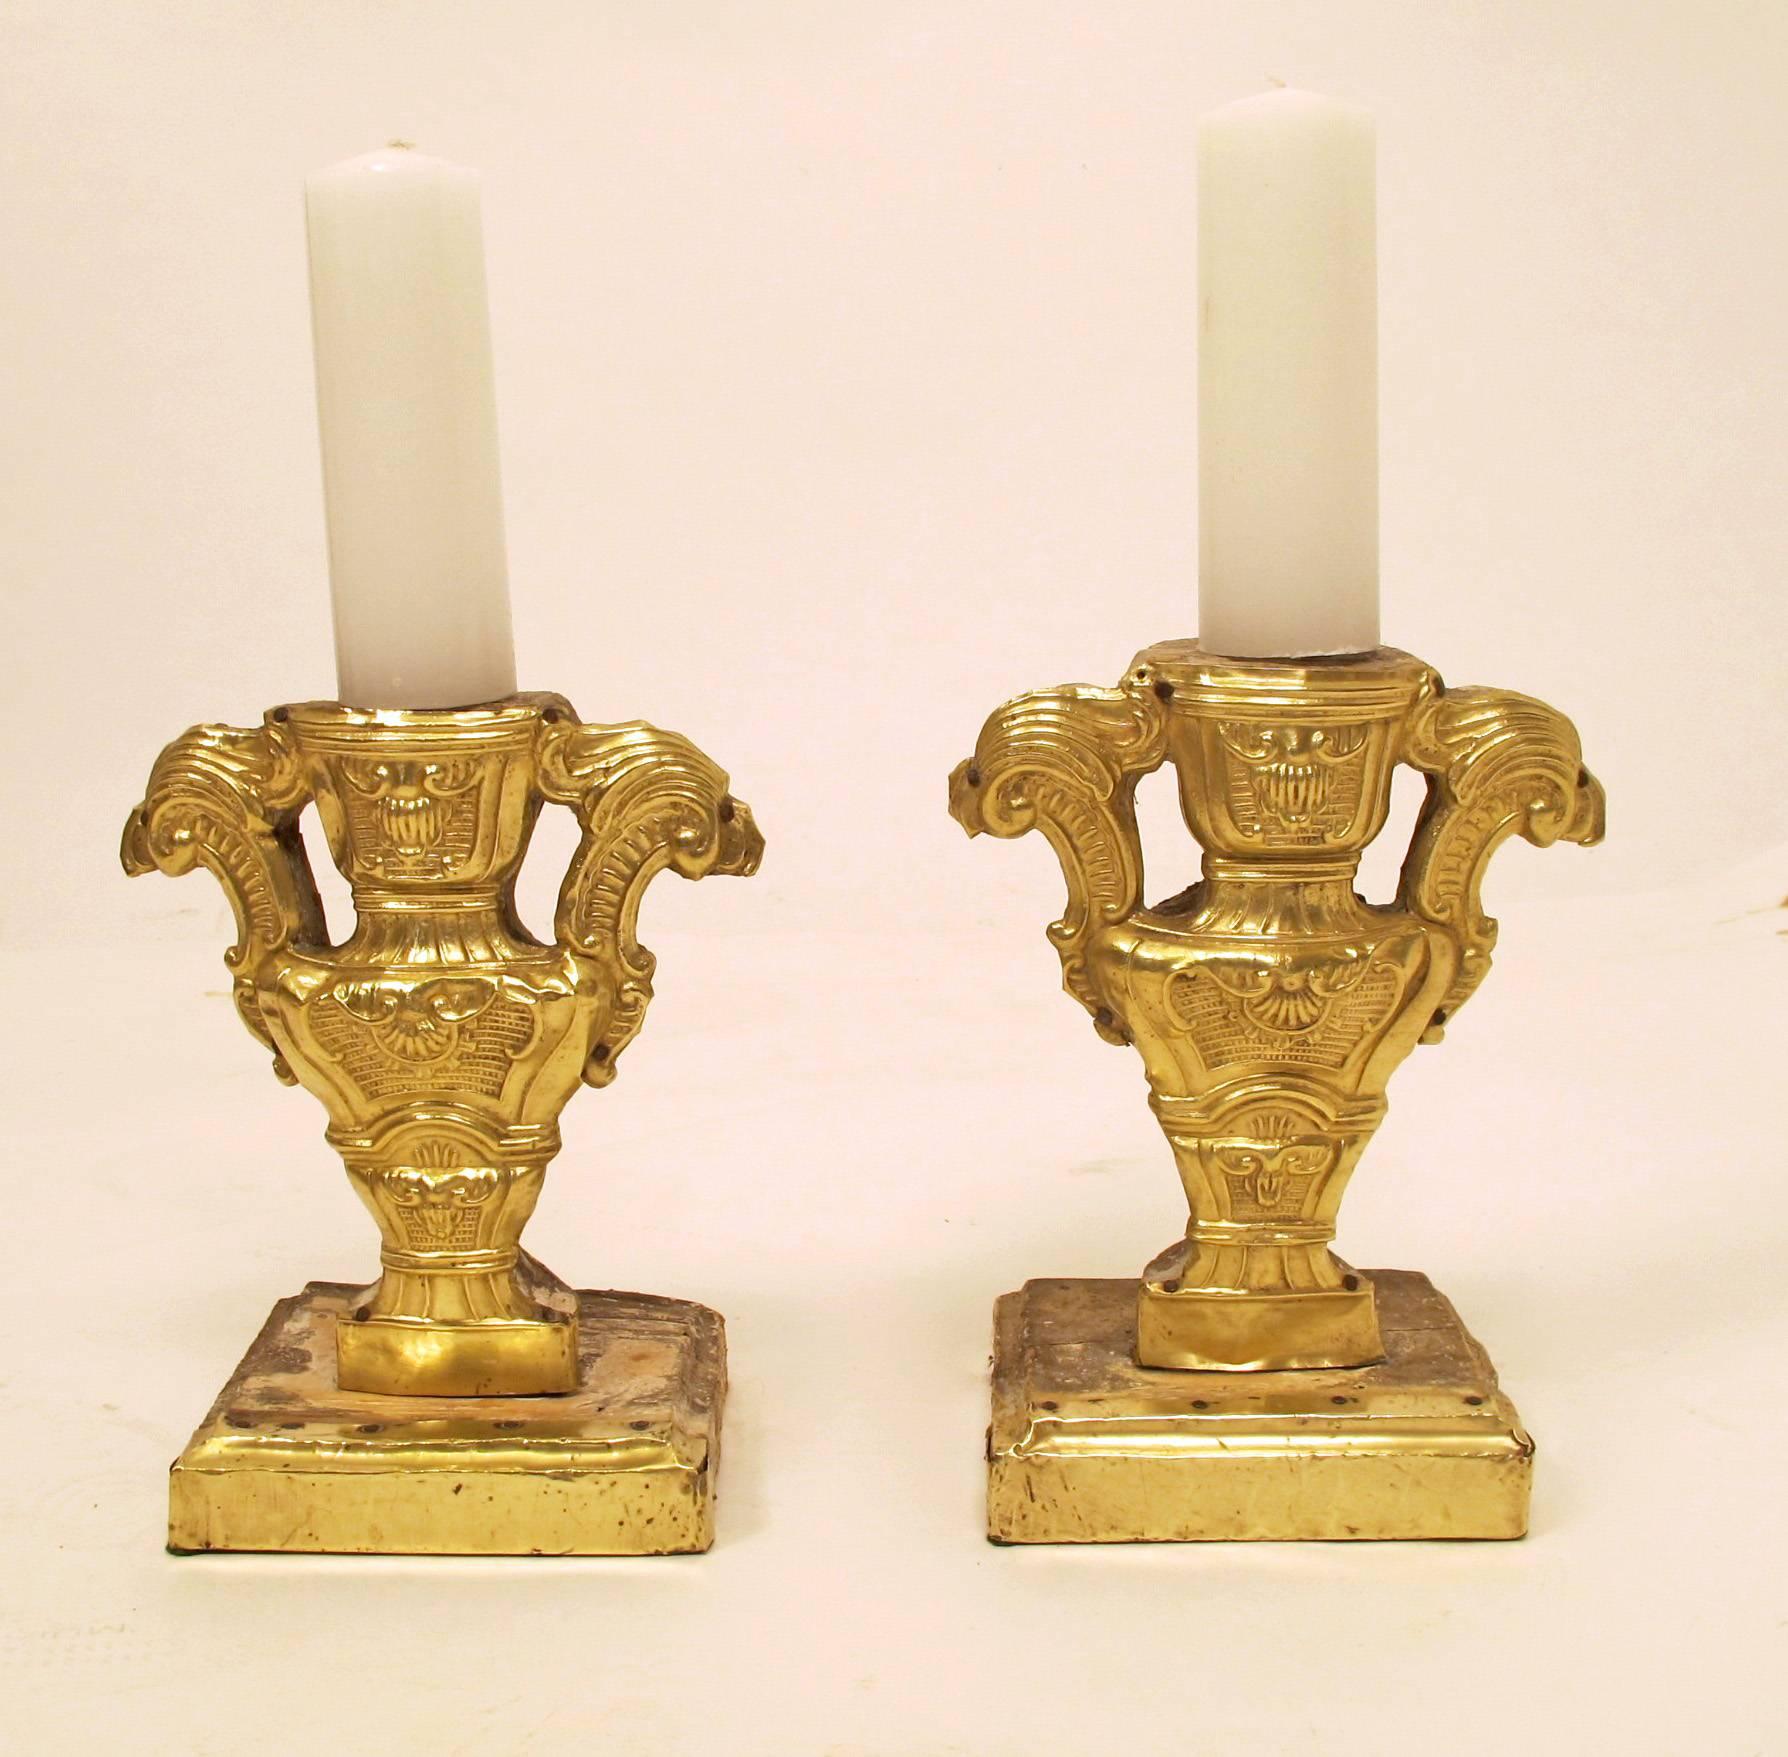 Ein Paar hervorragender Kerzenständer aus Messing über Holz (repoussiert) aus dem 18. Das Holz ist handgeschnitzt und bemalt, die Fronten sind mit Messing überzogen (repoussiert). Die Kerzen werden auf eine eiserne Lanze an der Spitze jedes Halters